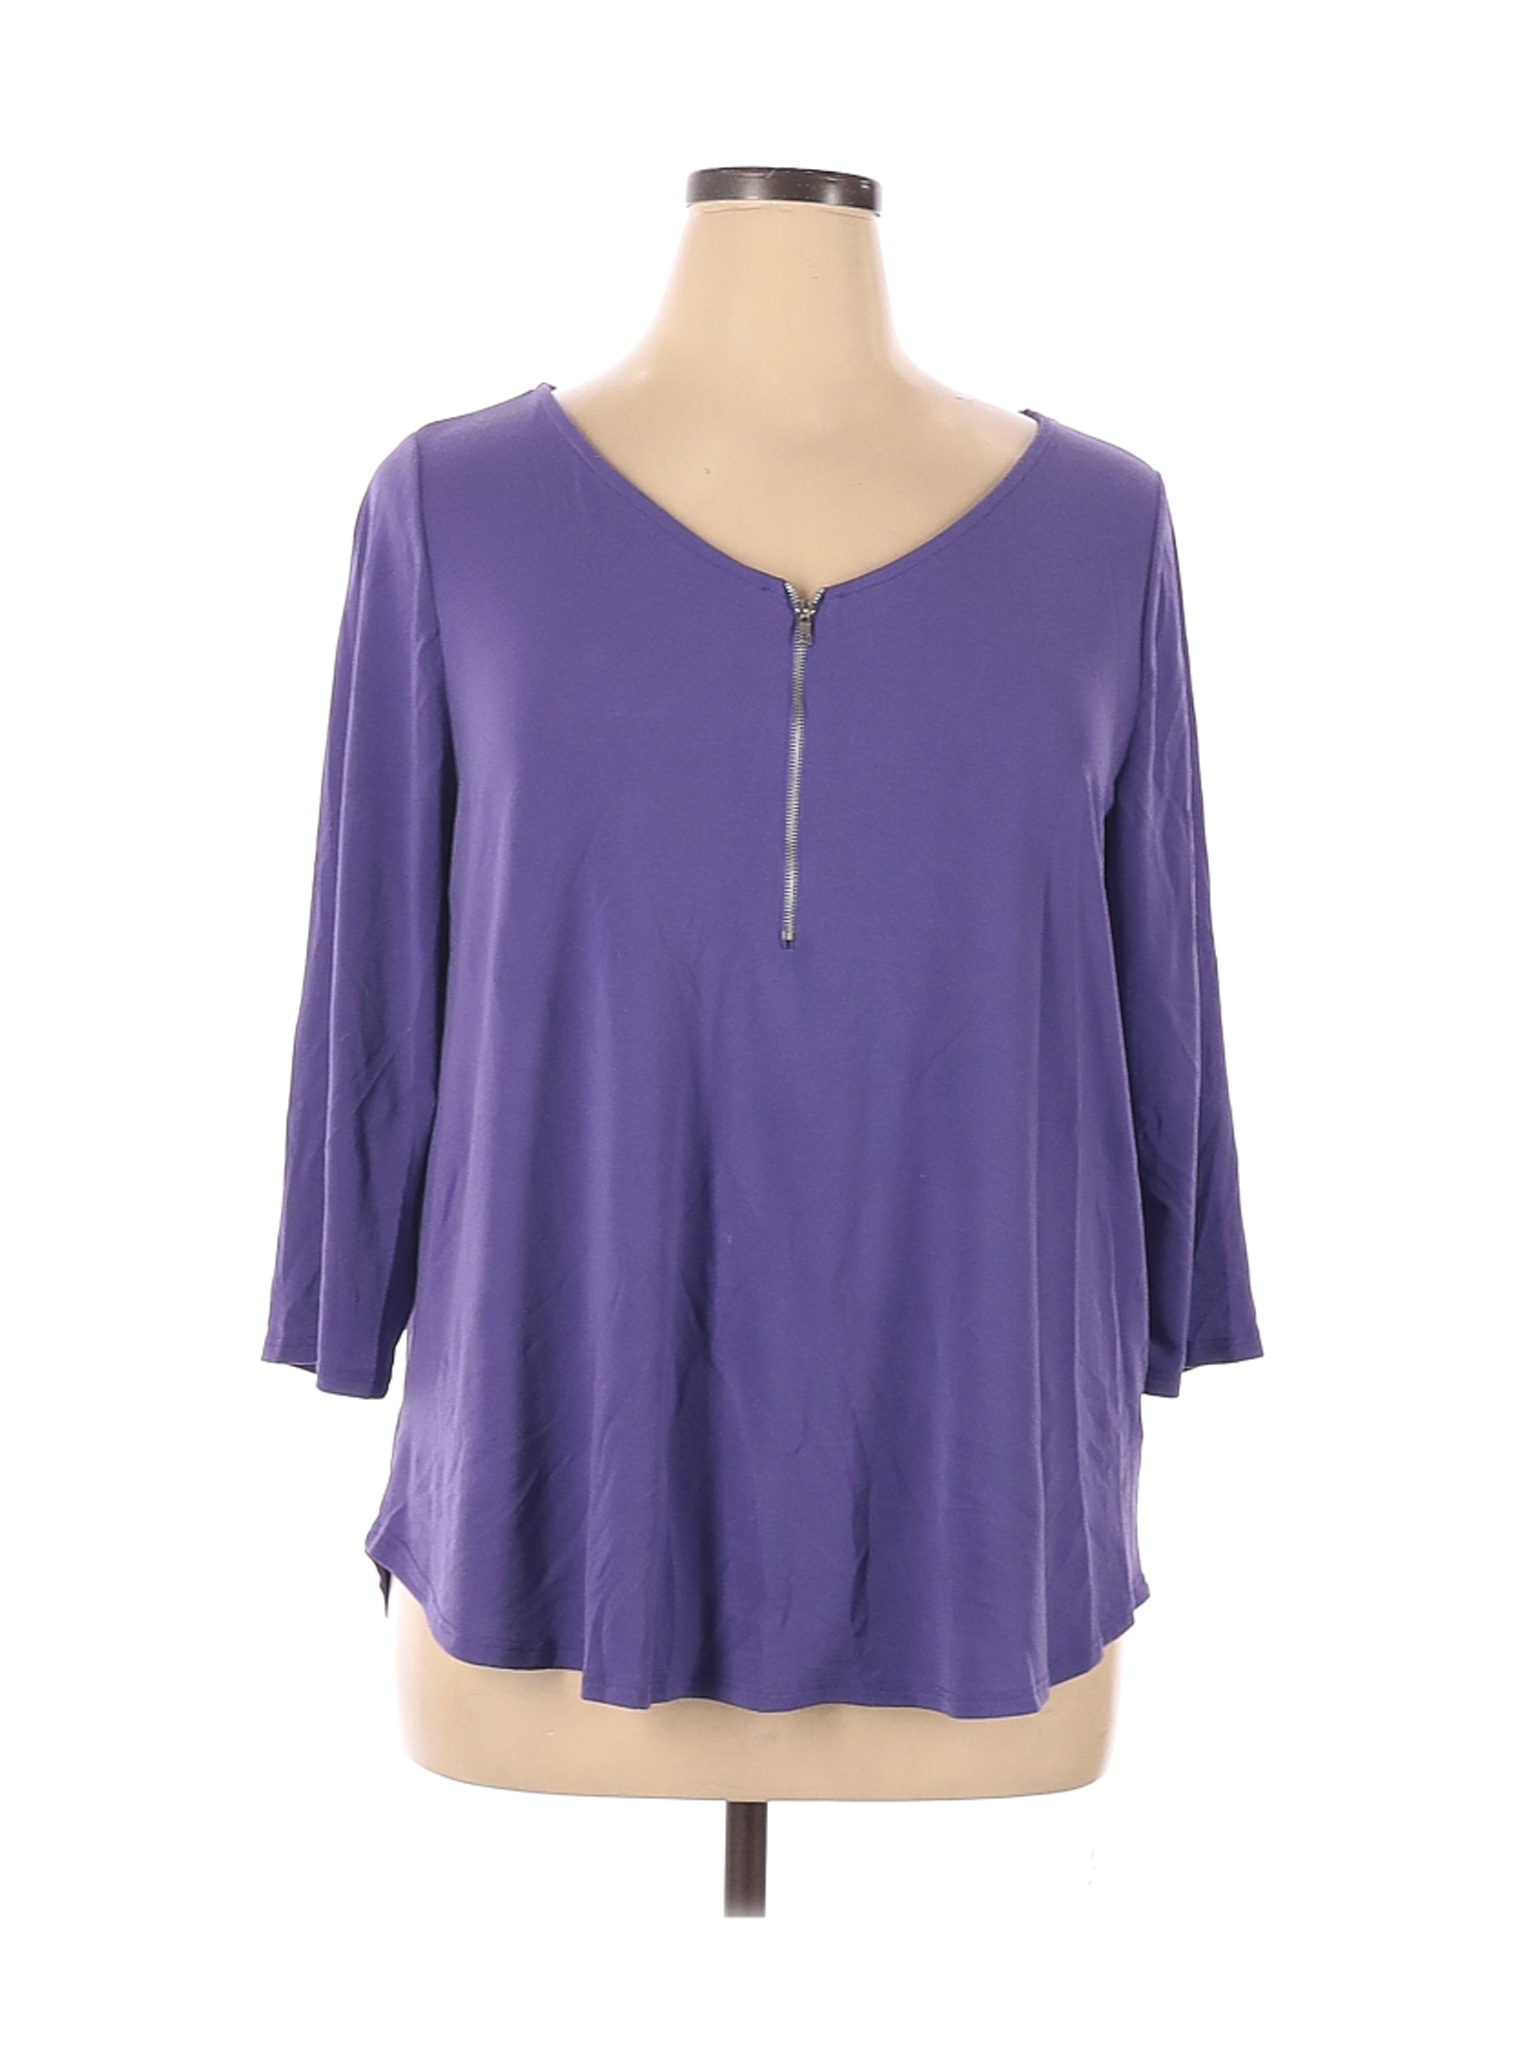 Green Envelope Women Purple Long Sleeve Top XL | eBay